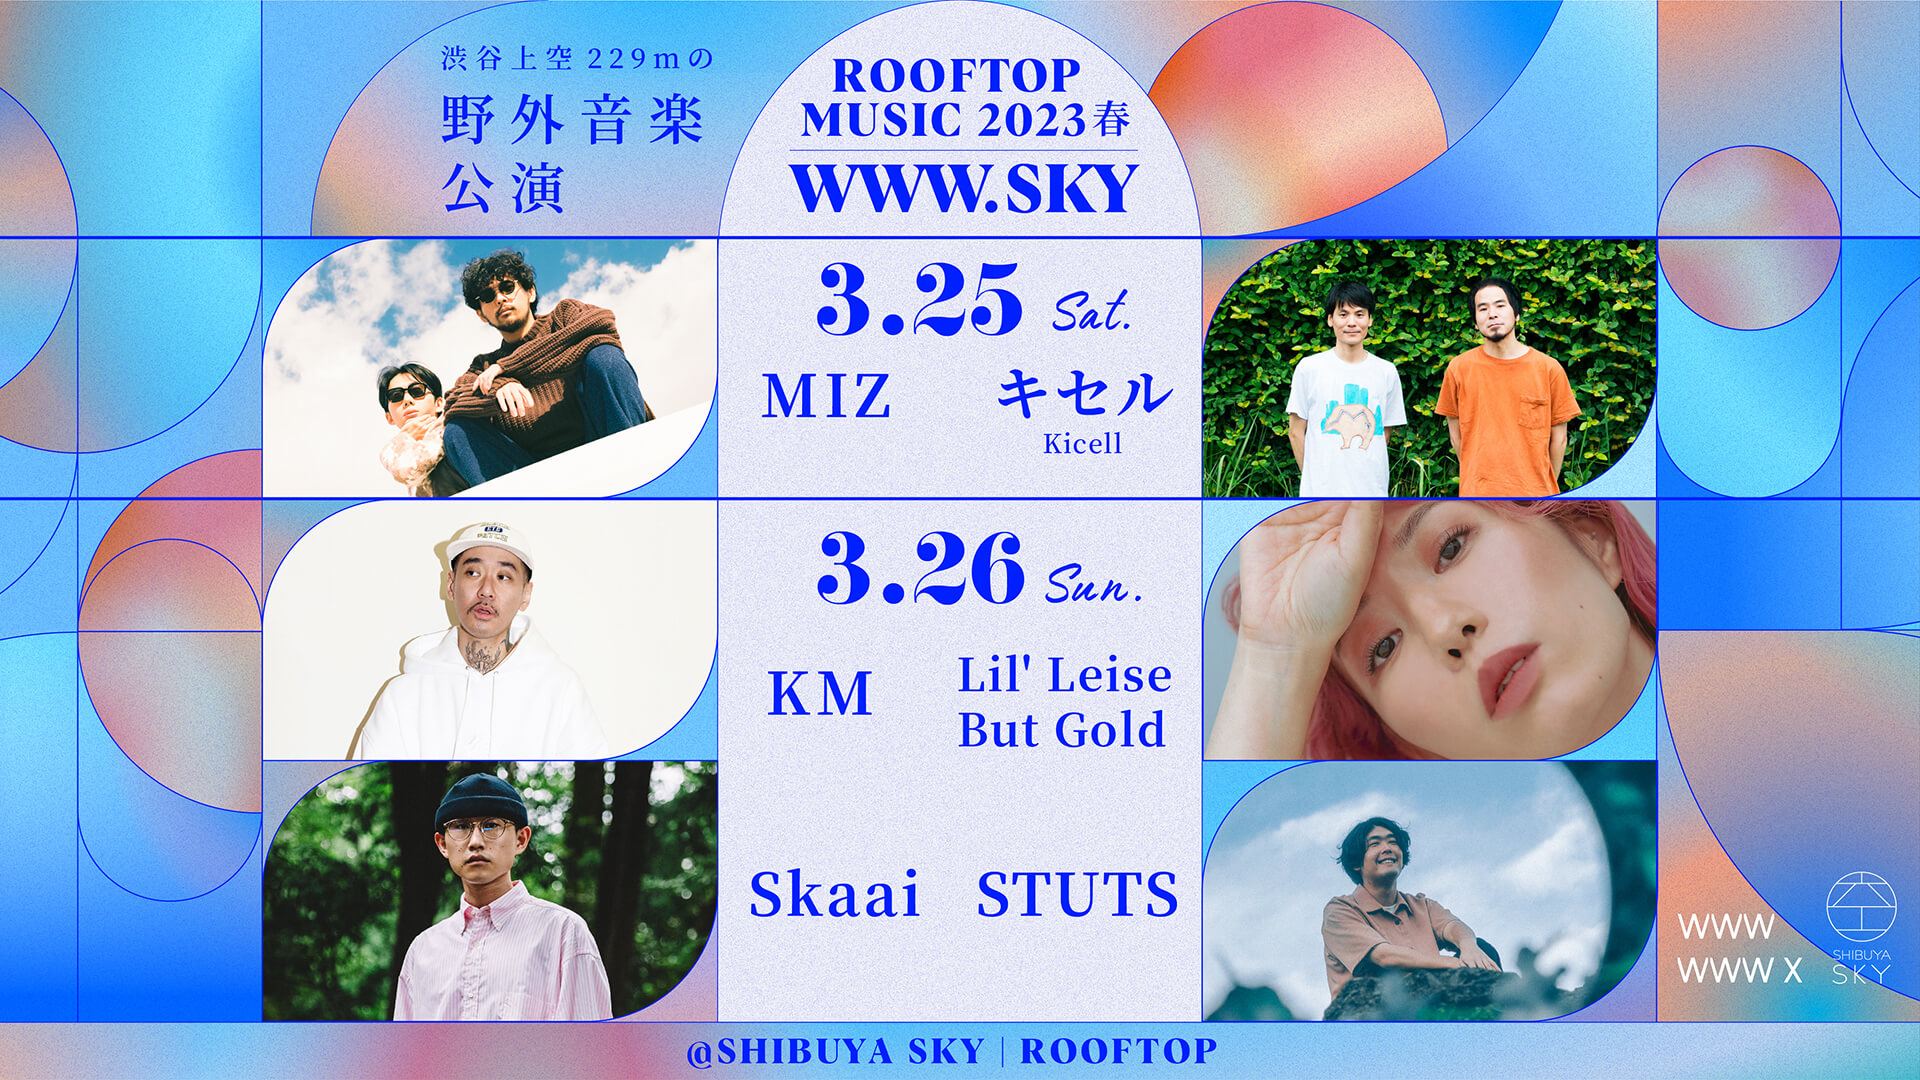 渋谷スクランブルスクエア「SHIBUYA SKY」の屋上でSTUTS、Skaai、MIZらがパフォーマンス！＜ROOFTOP MUSIC 2023春 WWW.SKY＞開催決定 music230222-rooftop-music-www2